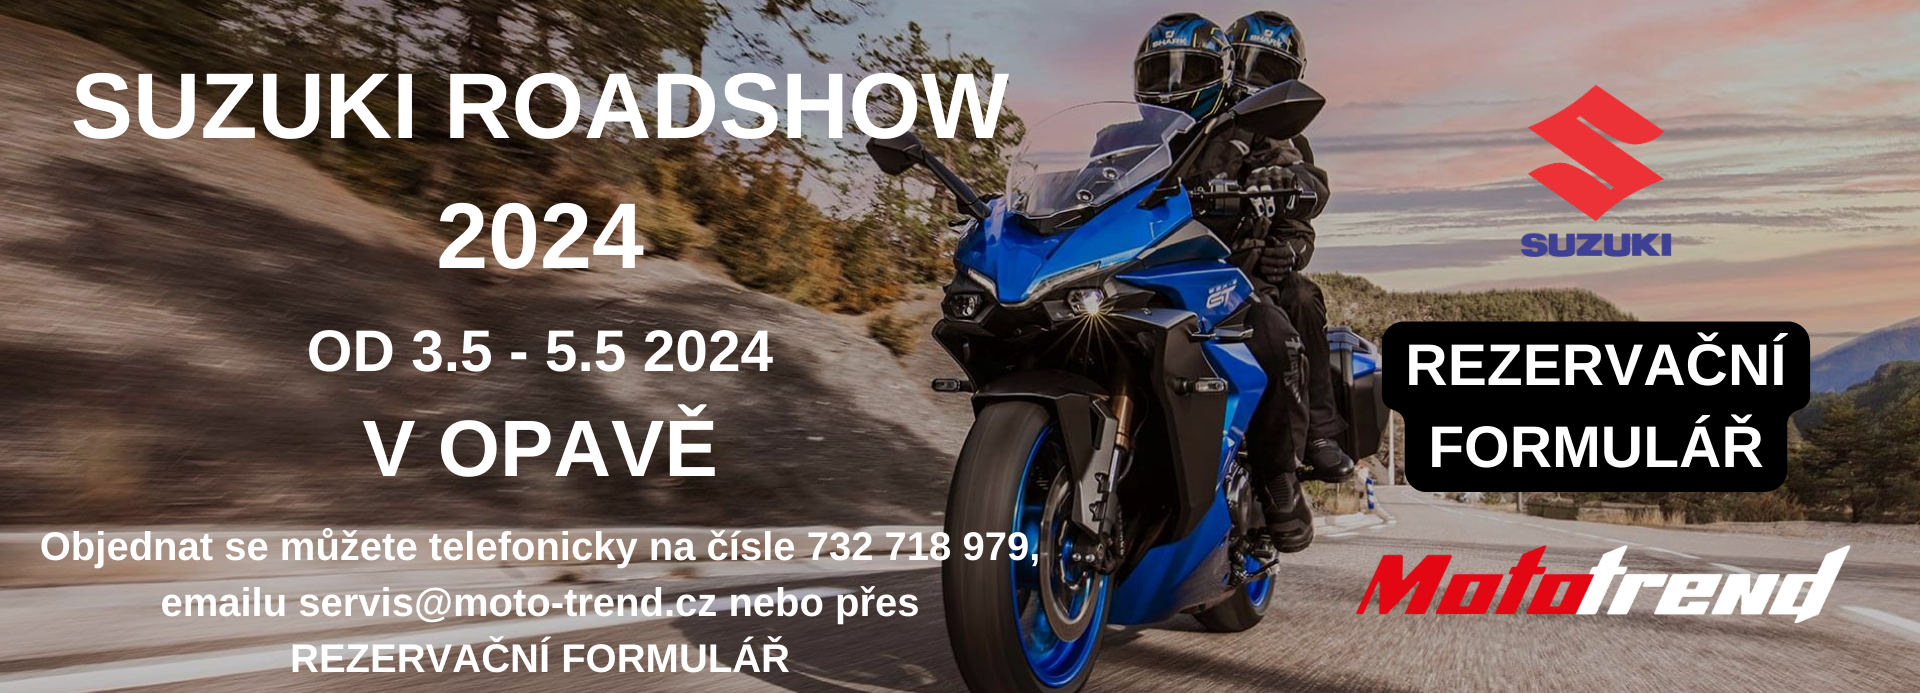 Suzuki Roadshow 2024 | moto-trend.cz